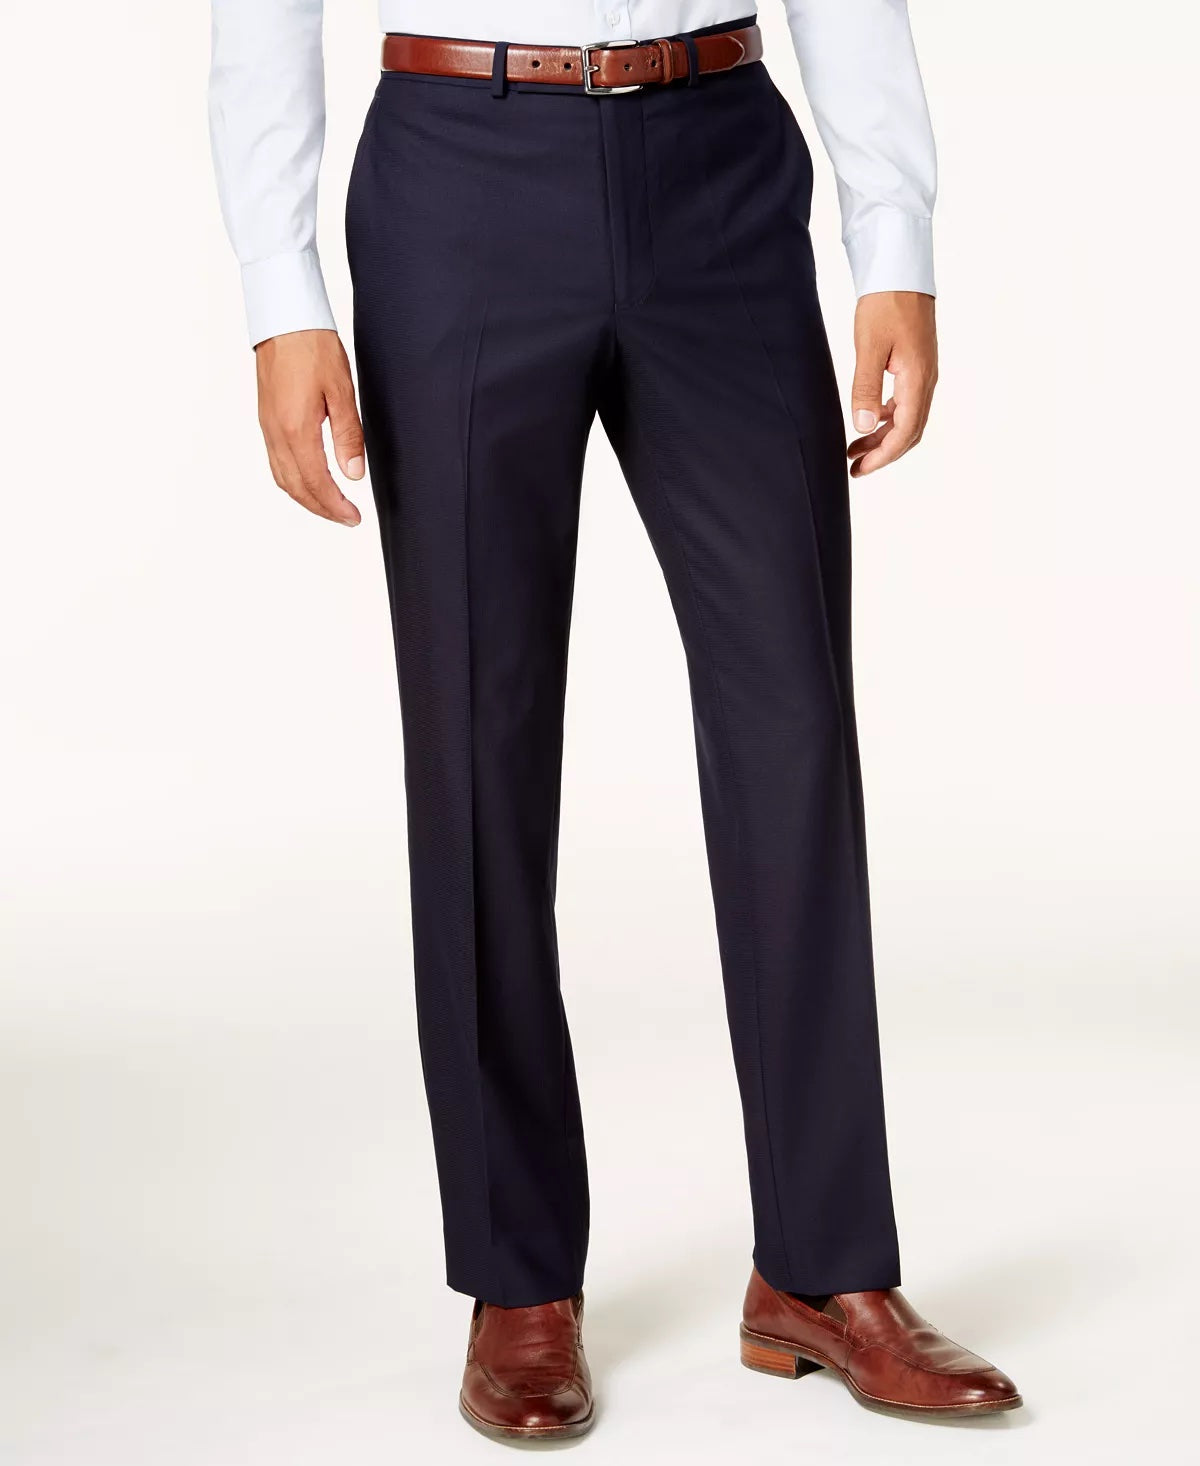 Kenneth Cole Reaction Men's Slim Fit Suit Dress Pants 31 x 32 Navy Blue